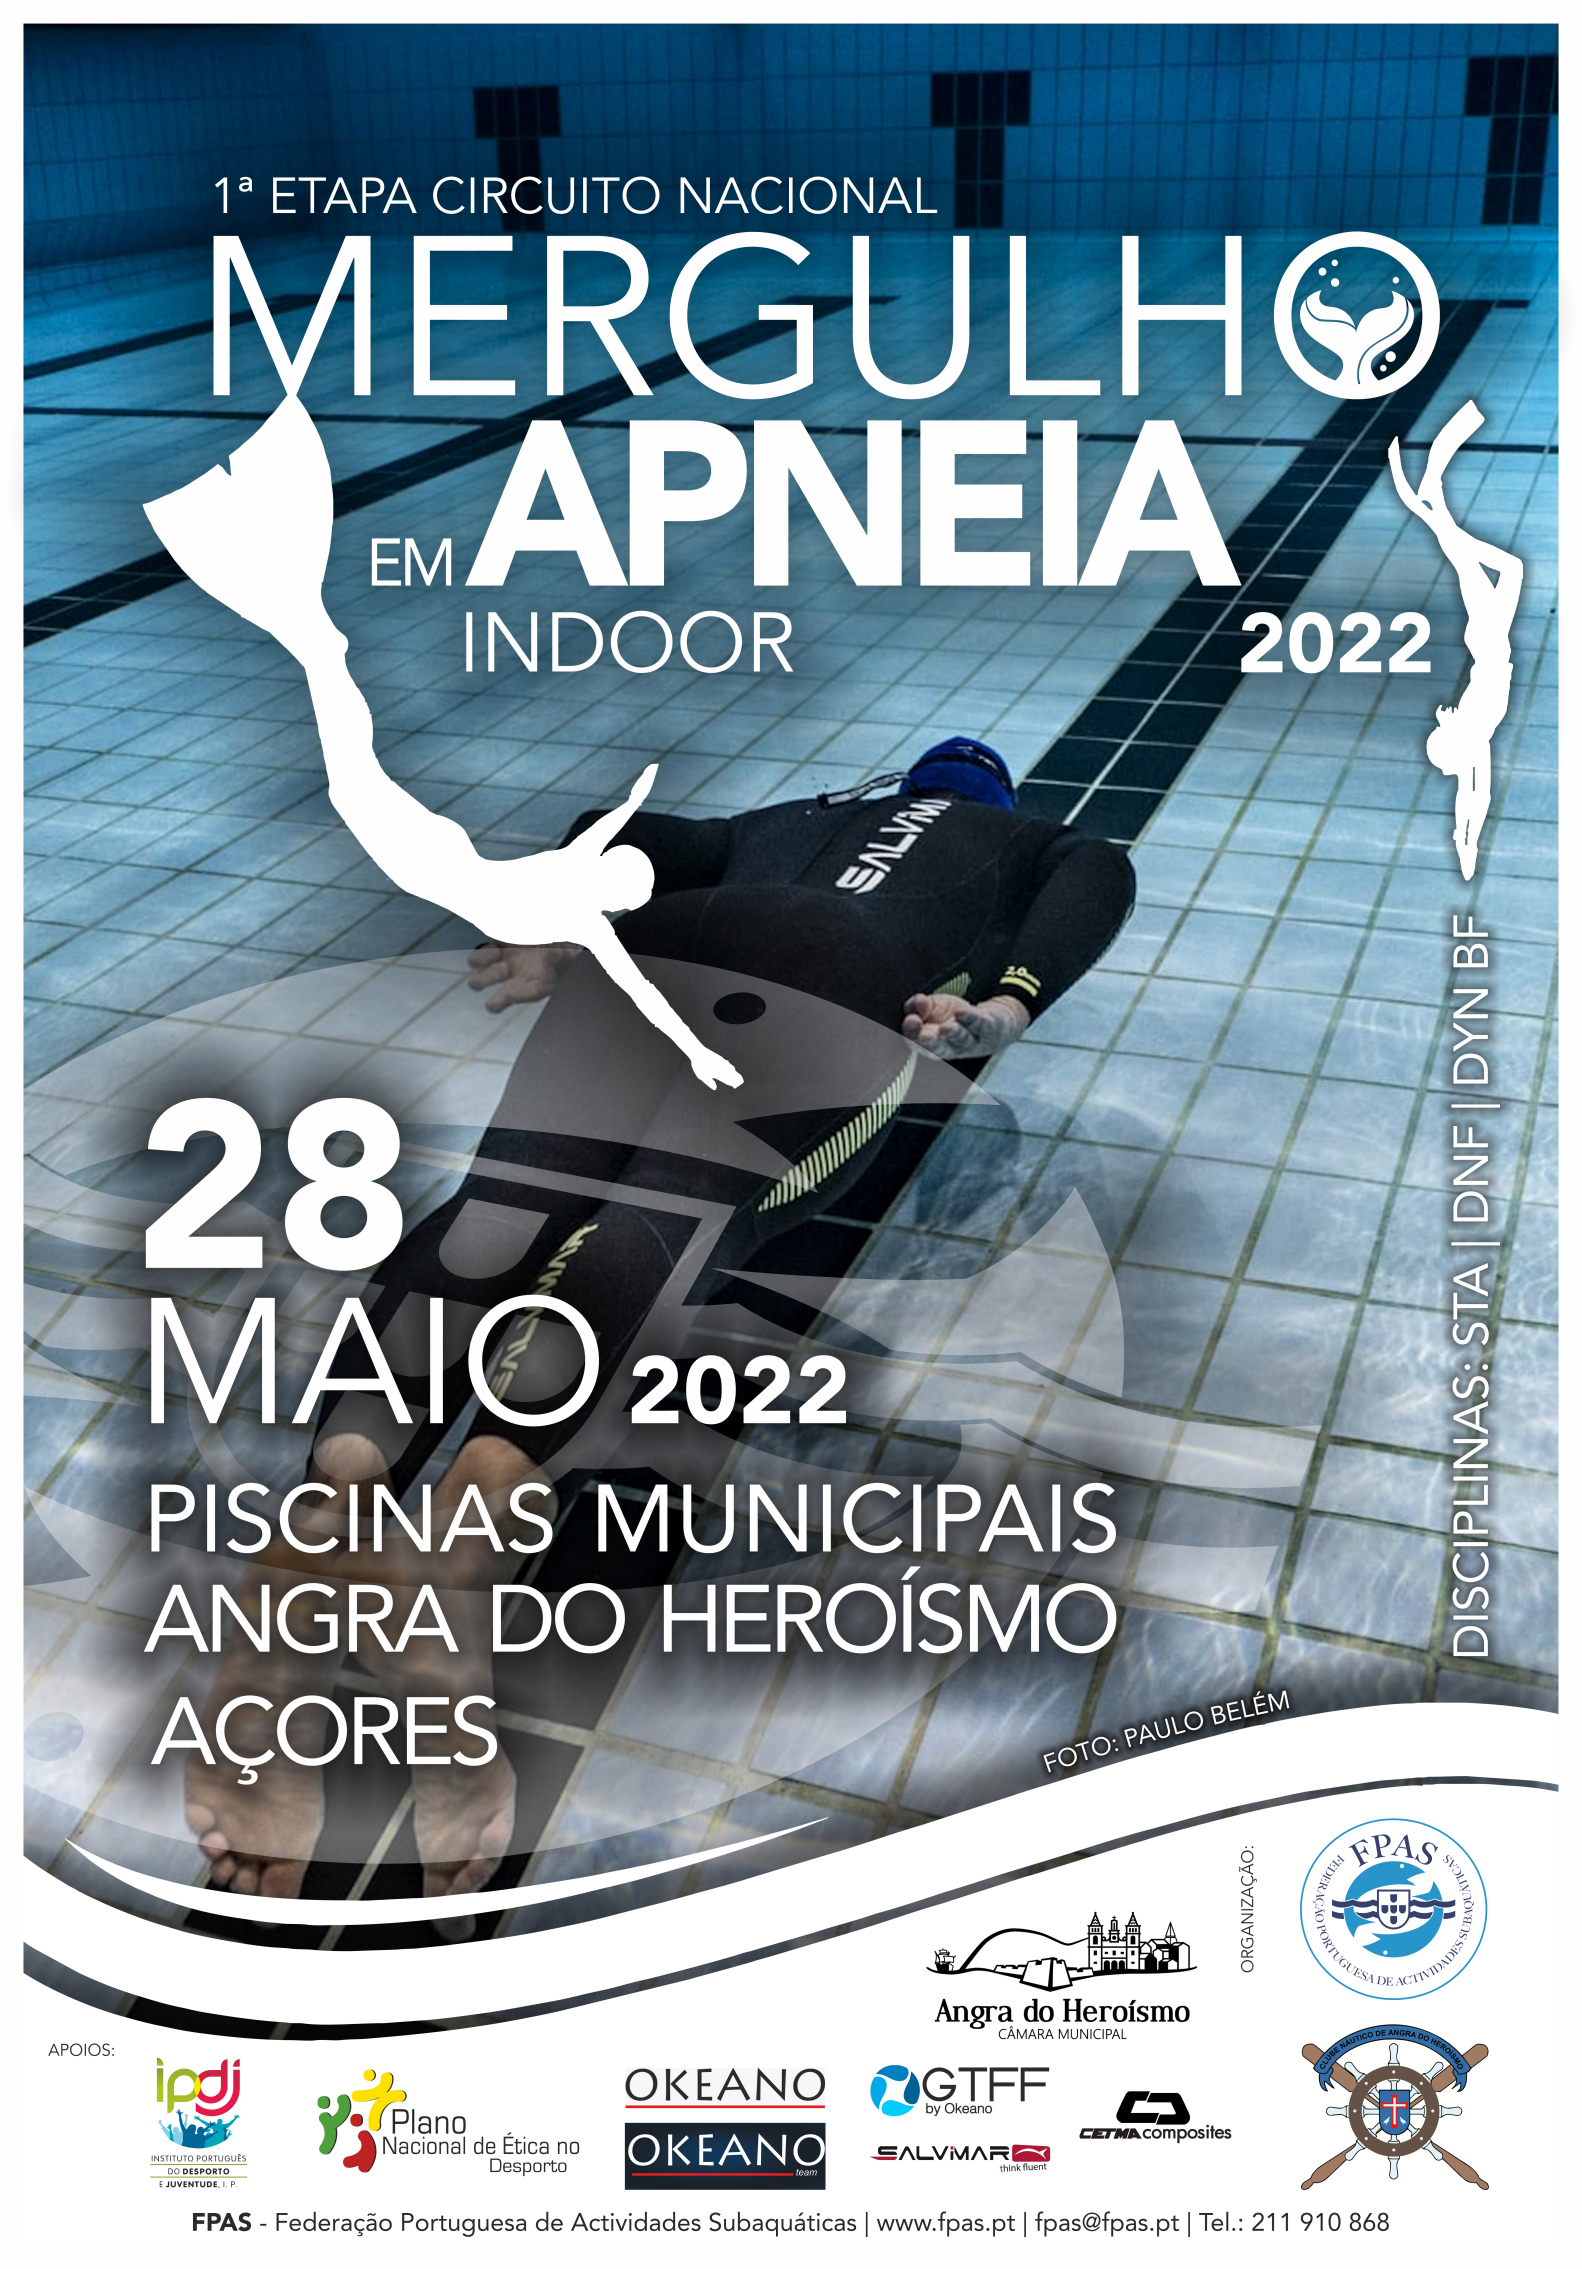 Circuito Nacional de Mergulho em Apneia INDOOR 2022 - 1ª Etapa